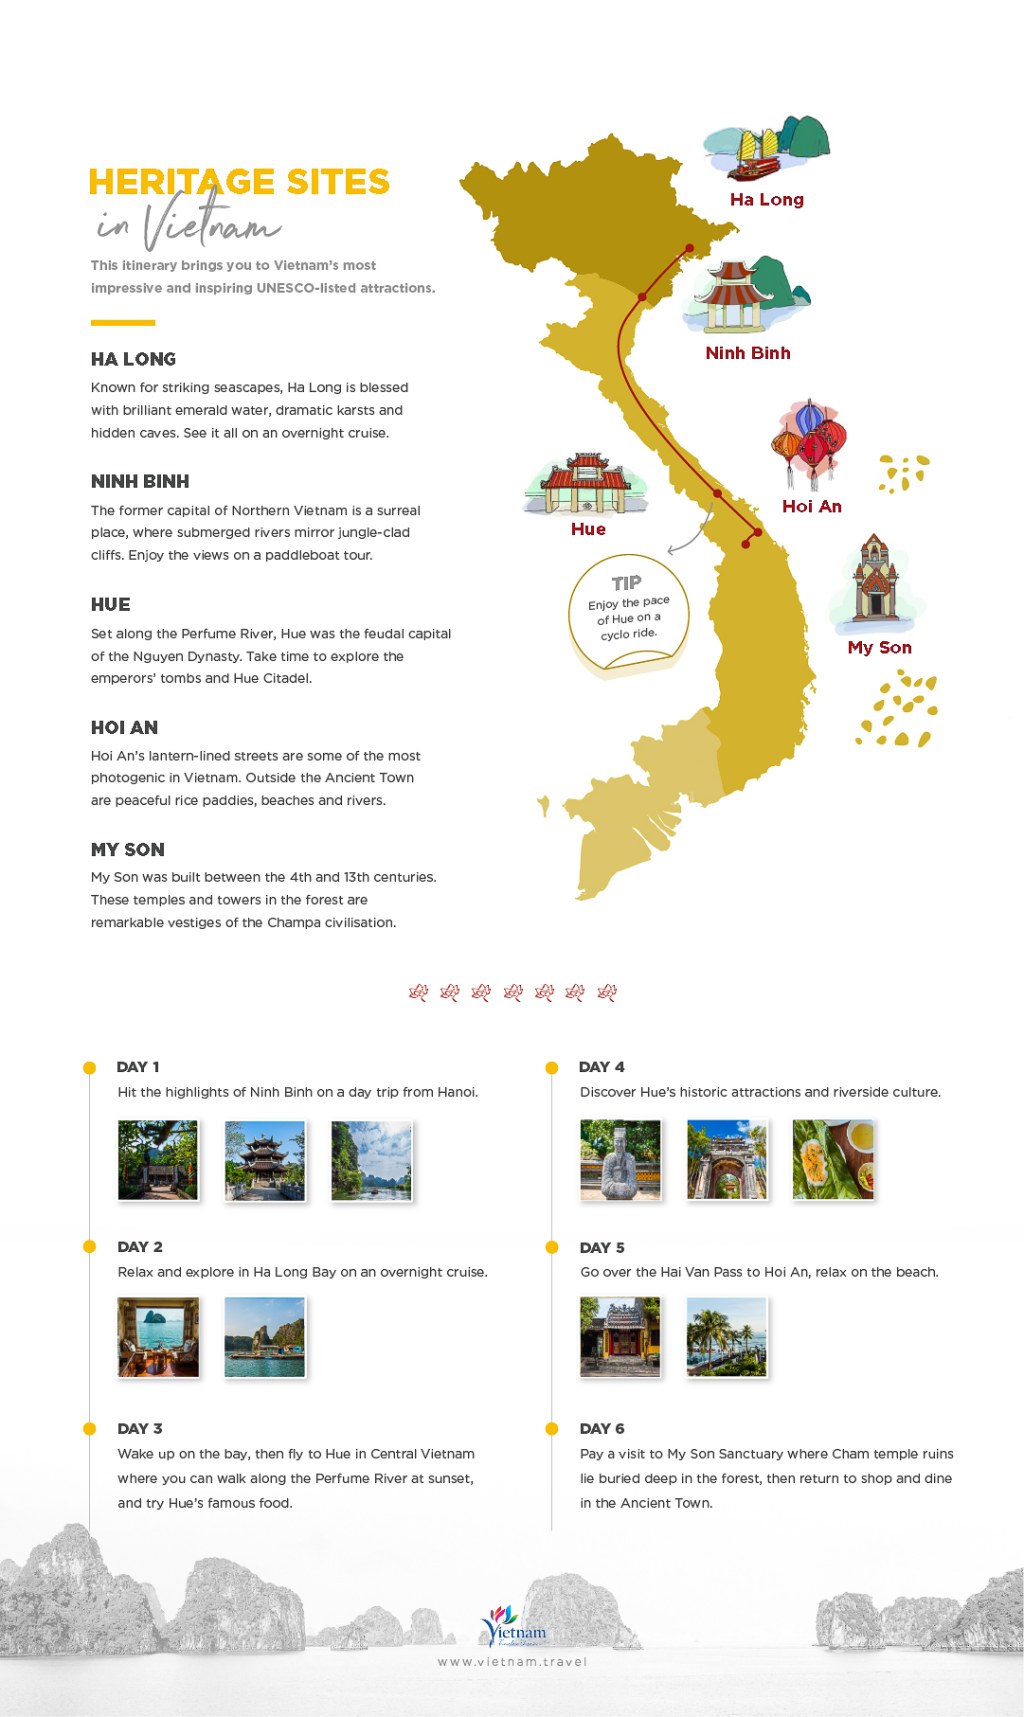 vietnam trip itinerary 4 days - Downloadable Vietnam Itineraries  Vietnam Tourism